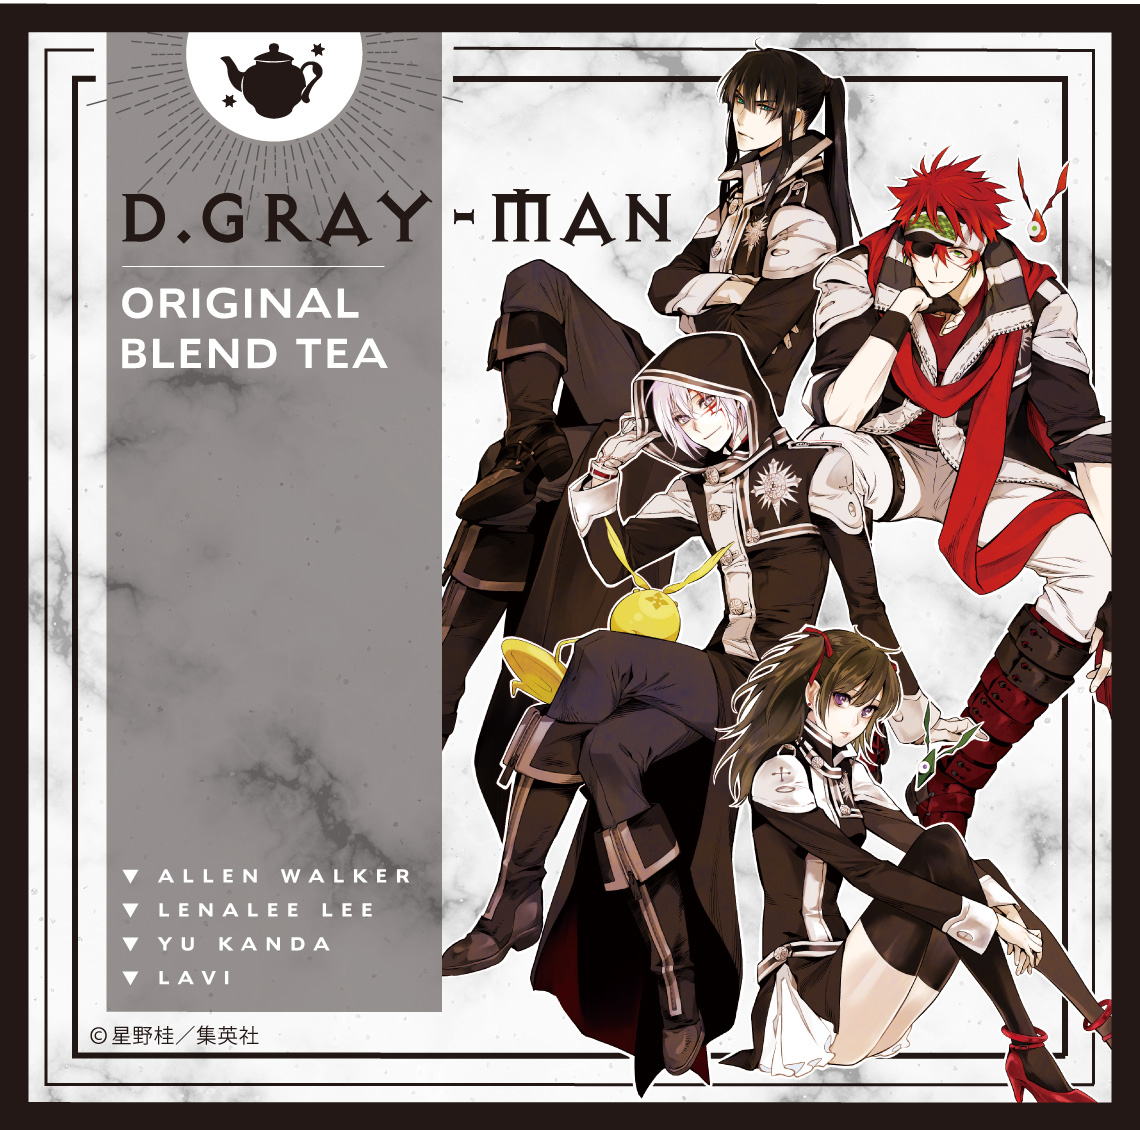 D.Gray-man BLEND TEA